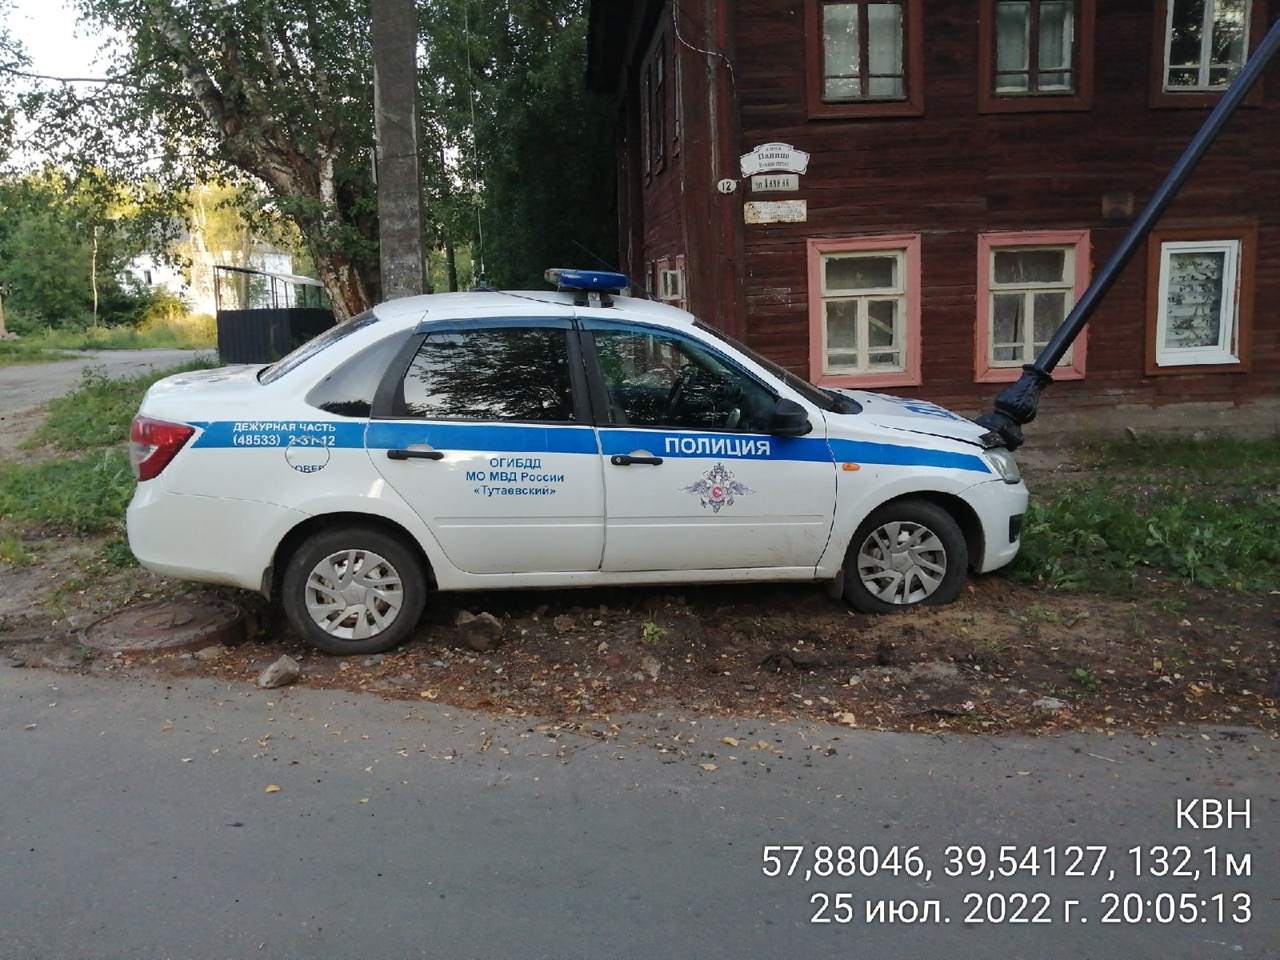 В Ярославской области автомобиль полицейских во время погони врезался в столб